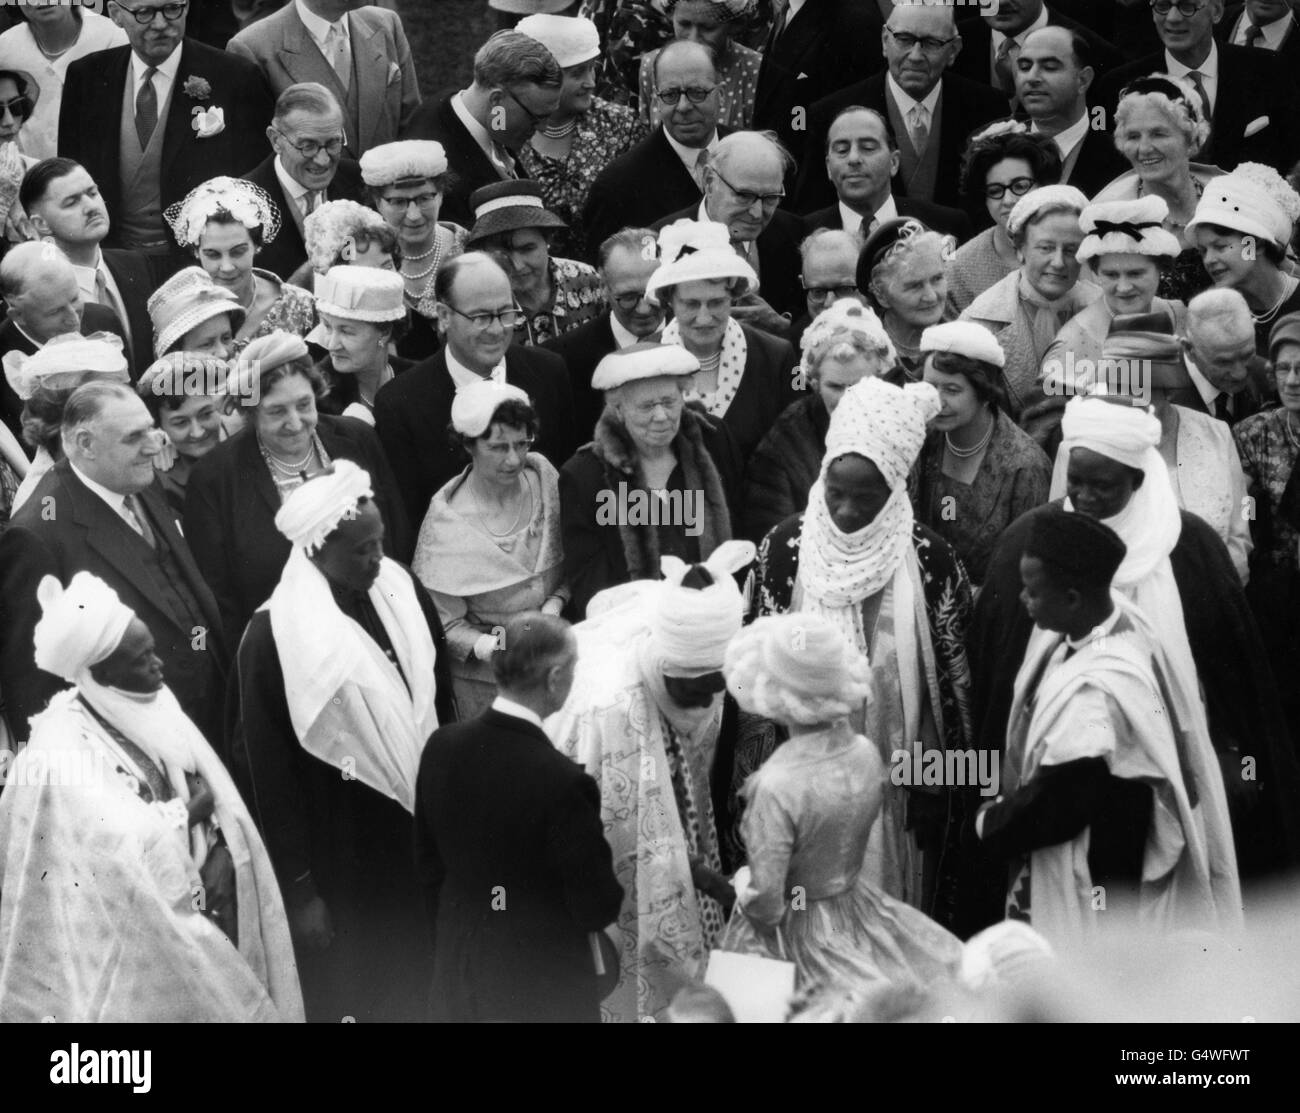 La reine Elizabeth II saluait les invités outre-mer en costume national, lors de la fête de jardin qu'elle a donnée au Palais de Buckingham, Londres. Banque D'Images